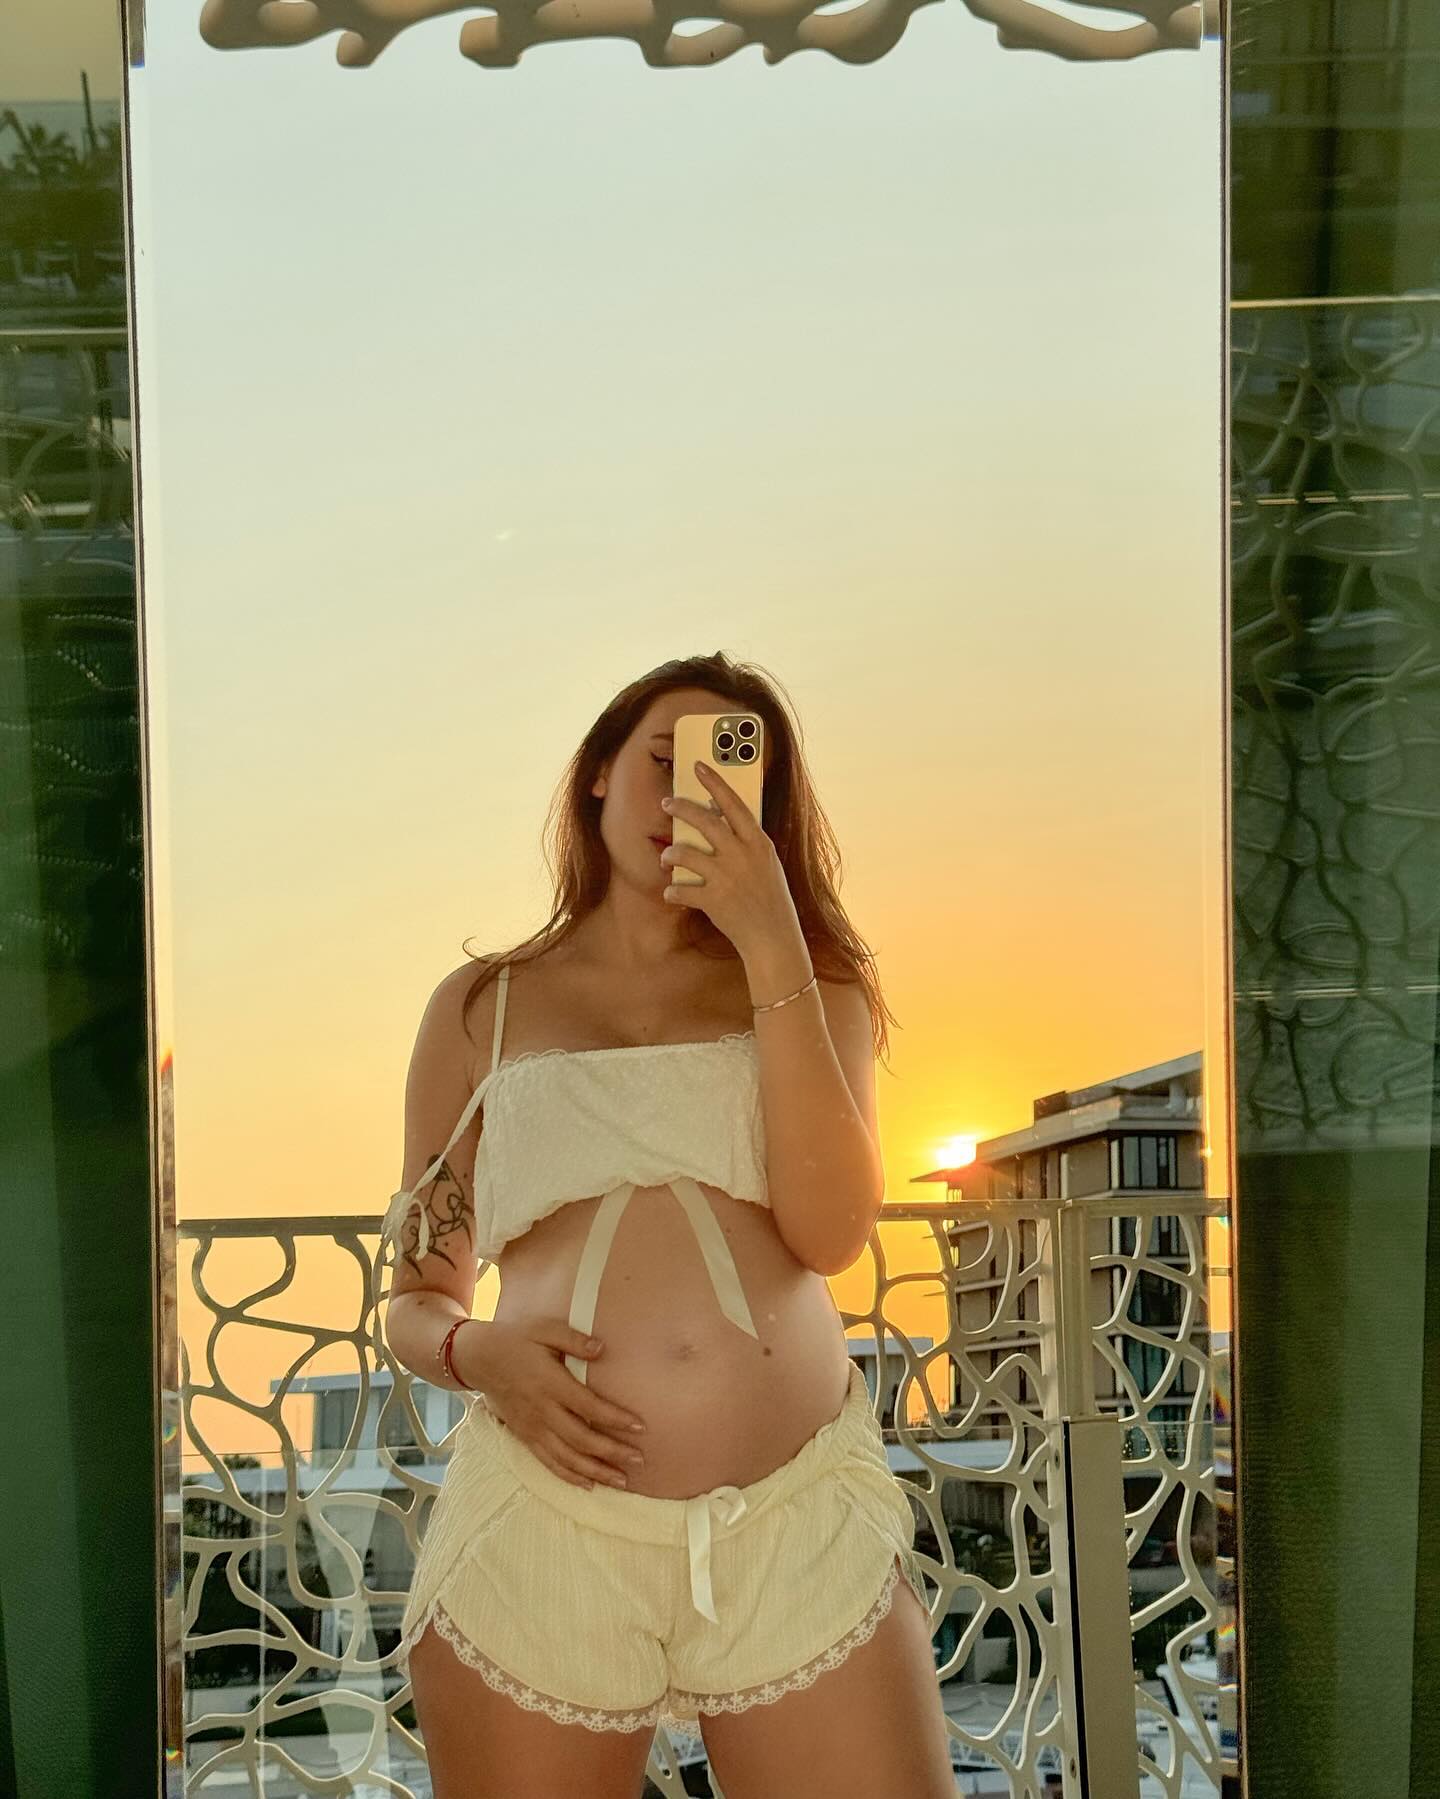 Известный блогер Влад А4 скоро станет отцом, а его подруга Юлия Годунова сделала беременную фотосессию в пижамных трусиках. Кто такая Юлия Годунова и как она выглядела до беременности